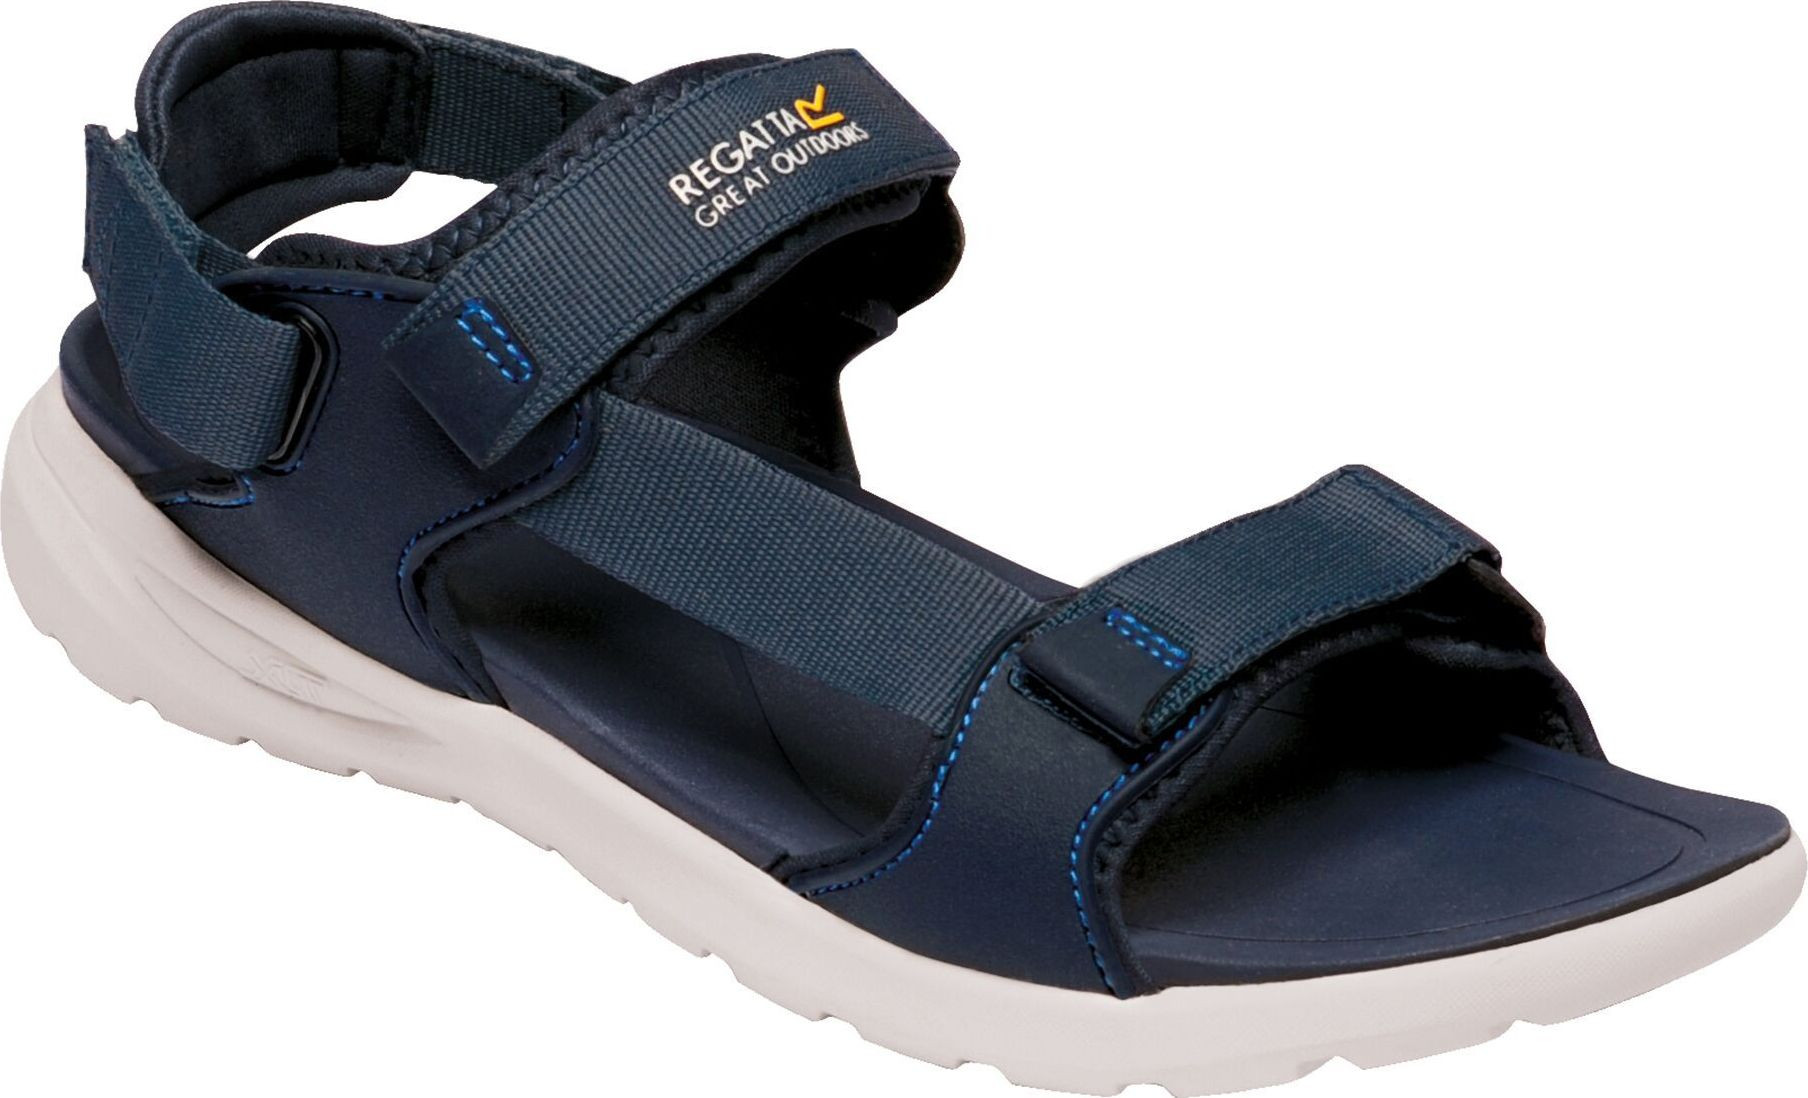 Pánské sandály REGATTA RMF658-5PM tmavě modré tmavě modré 44